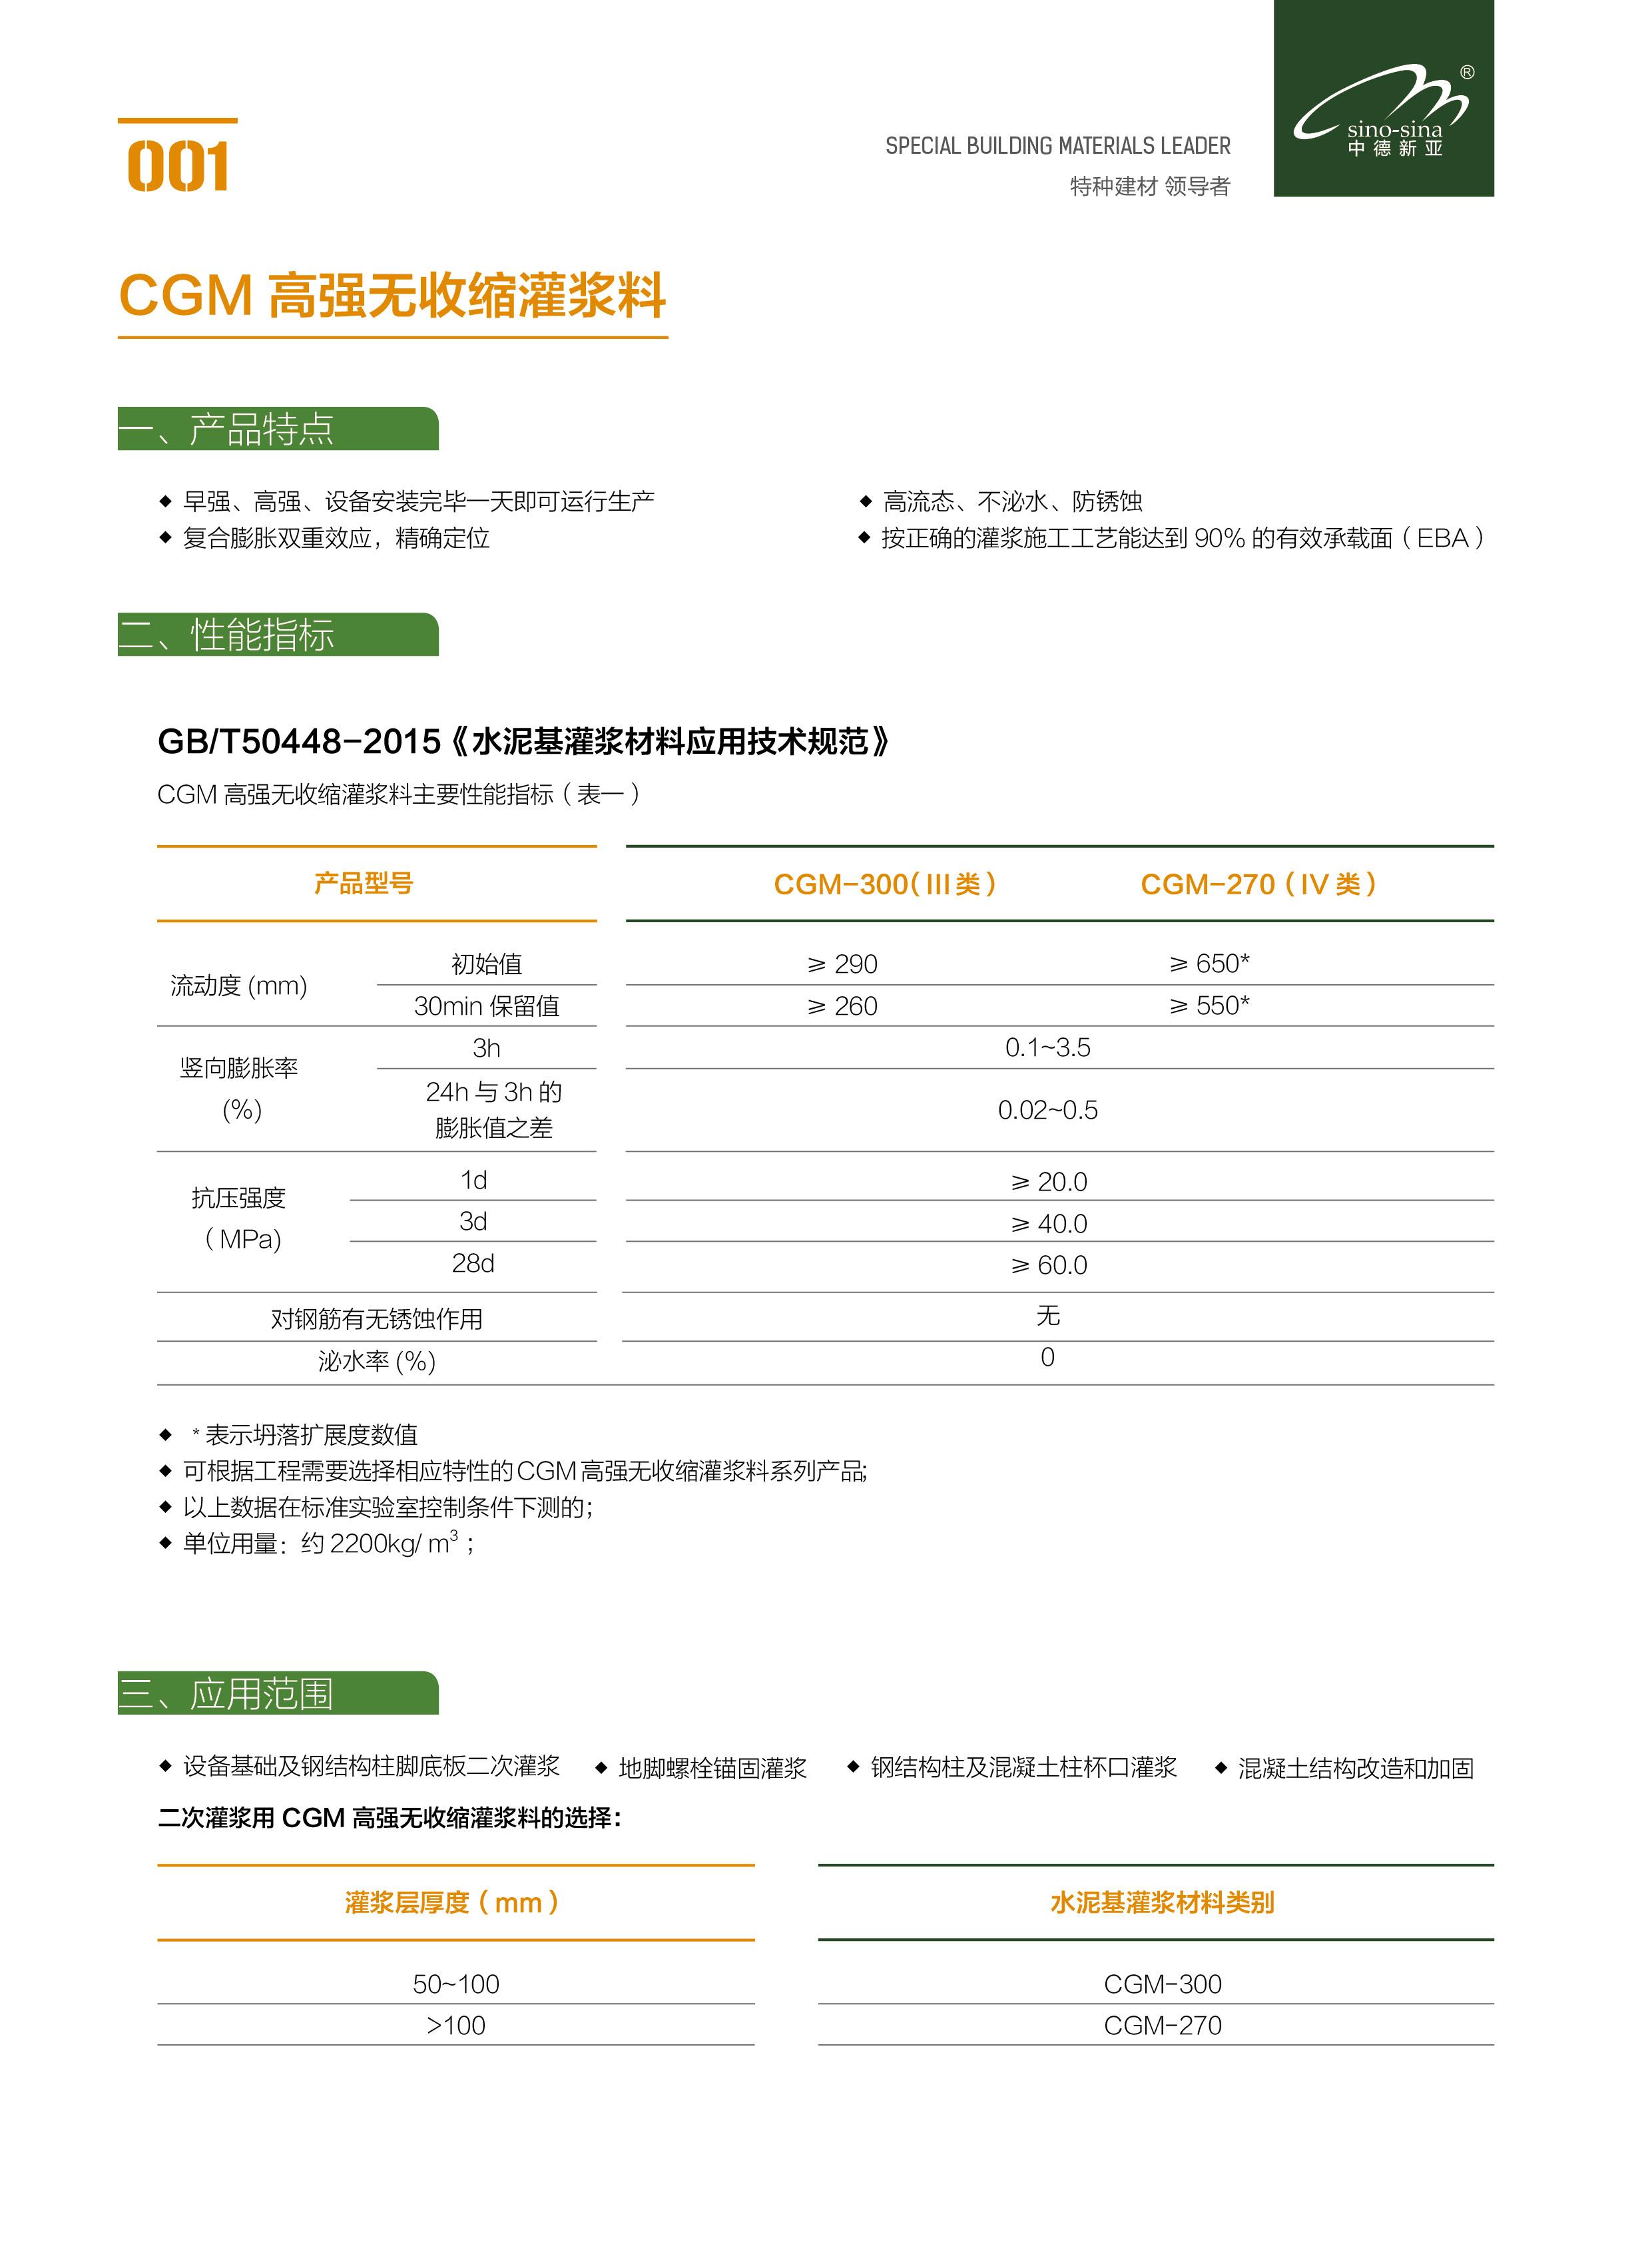 郑州全国H-60预应力管道压浆剂铁路标准发货